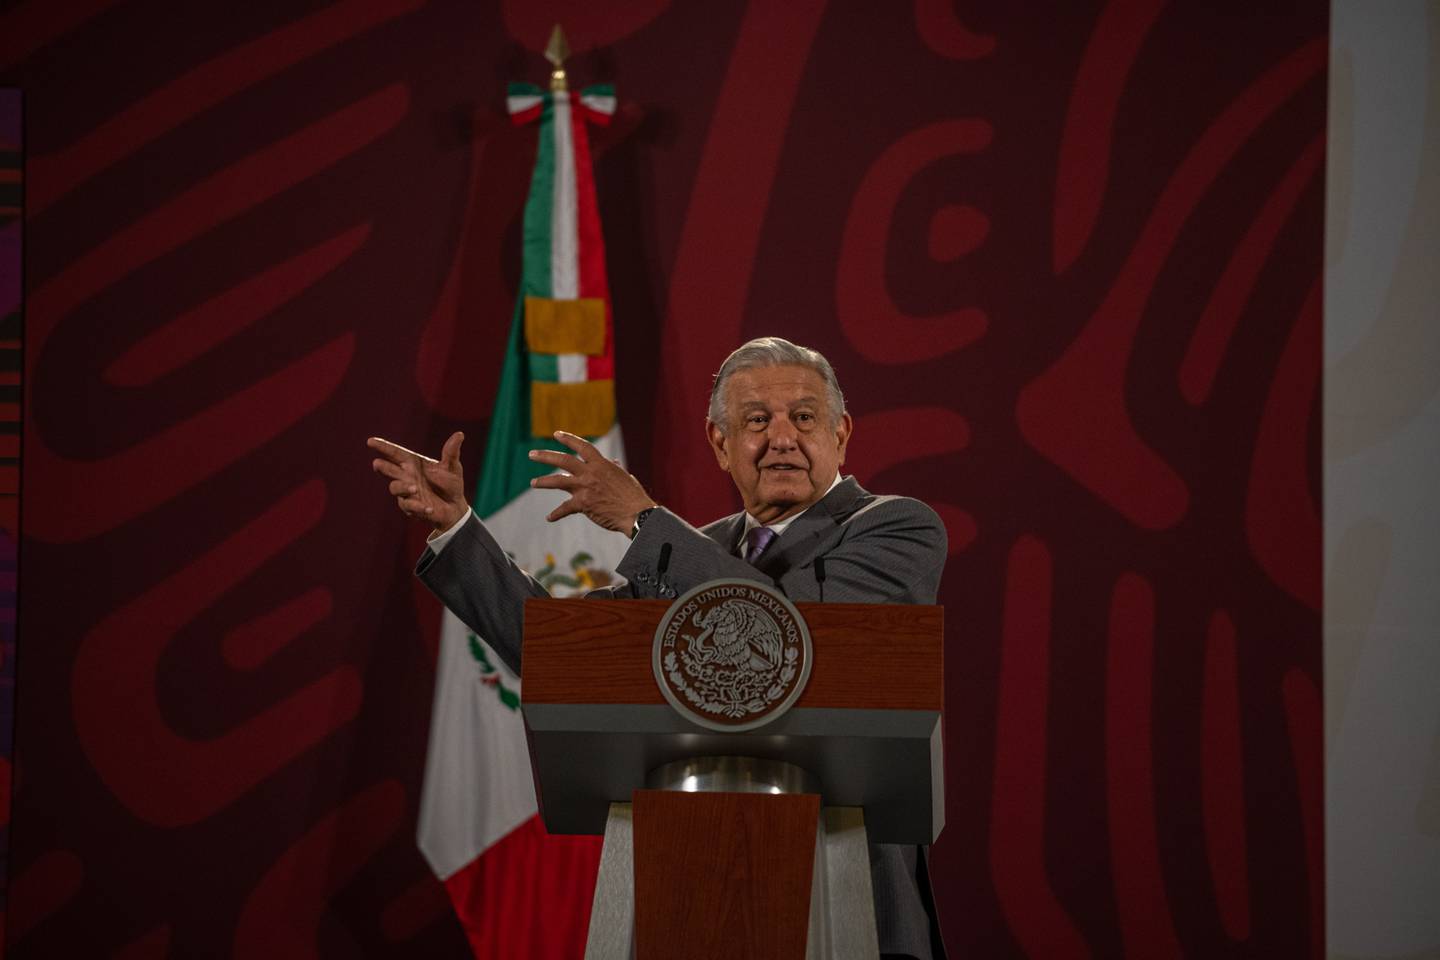 El presidente mexicano, Andrés Manuel López Obrador, sorprendió a los oyentes el jueves cuando anticipó la decisión del banco central de aumentar las tasas de interés horas antes del anuncio oficial.